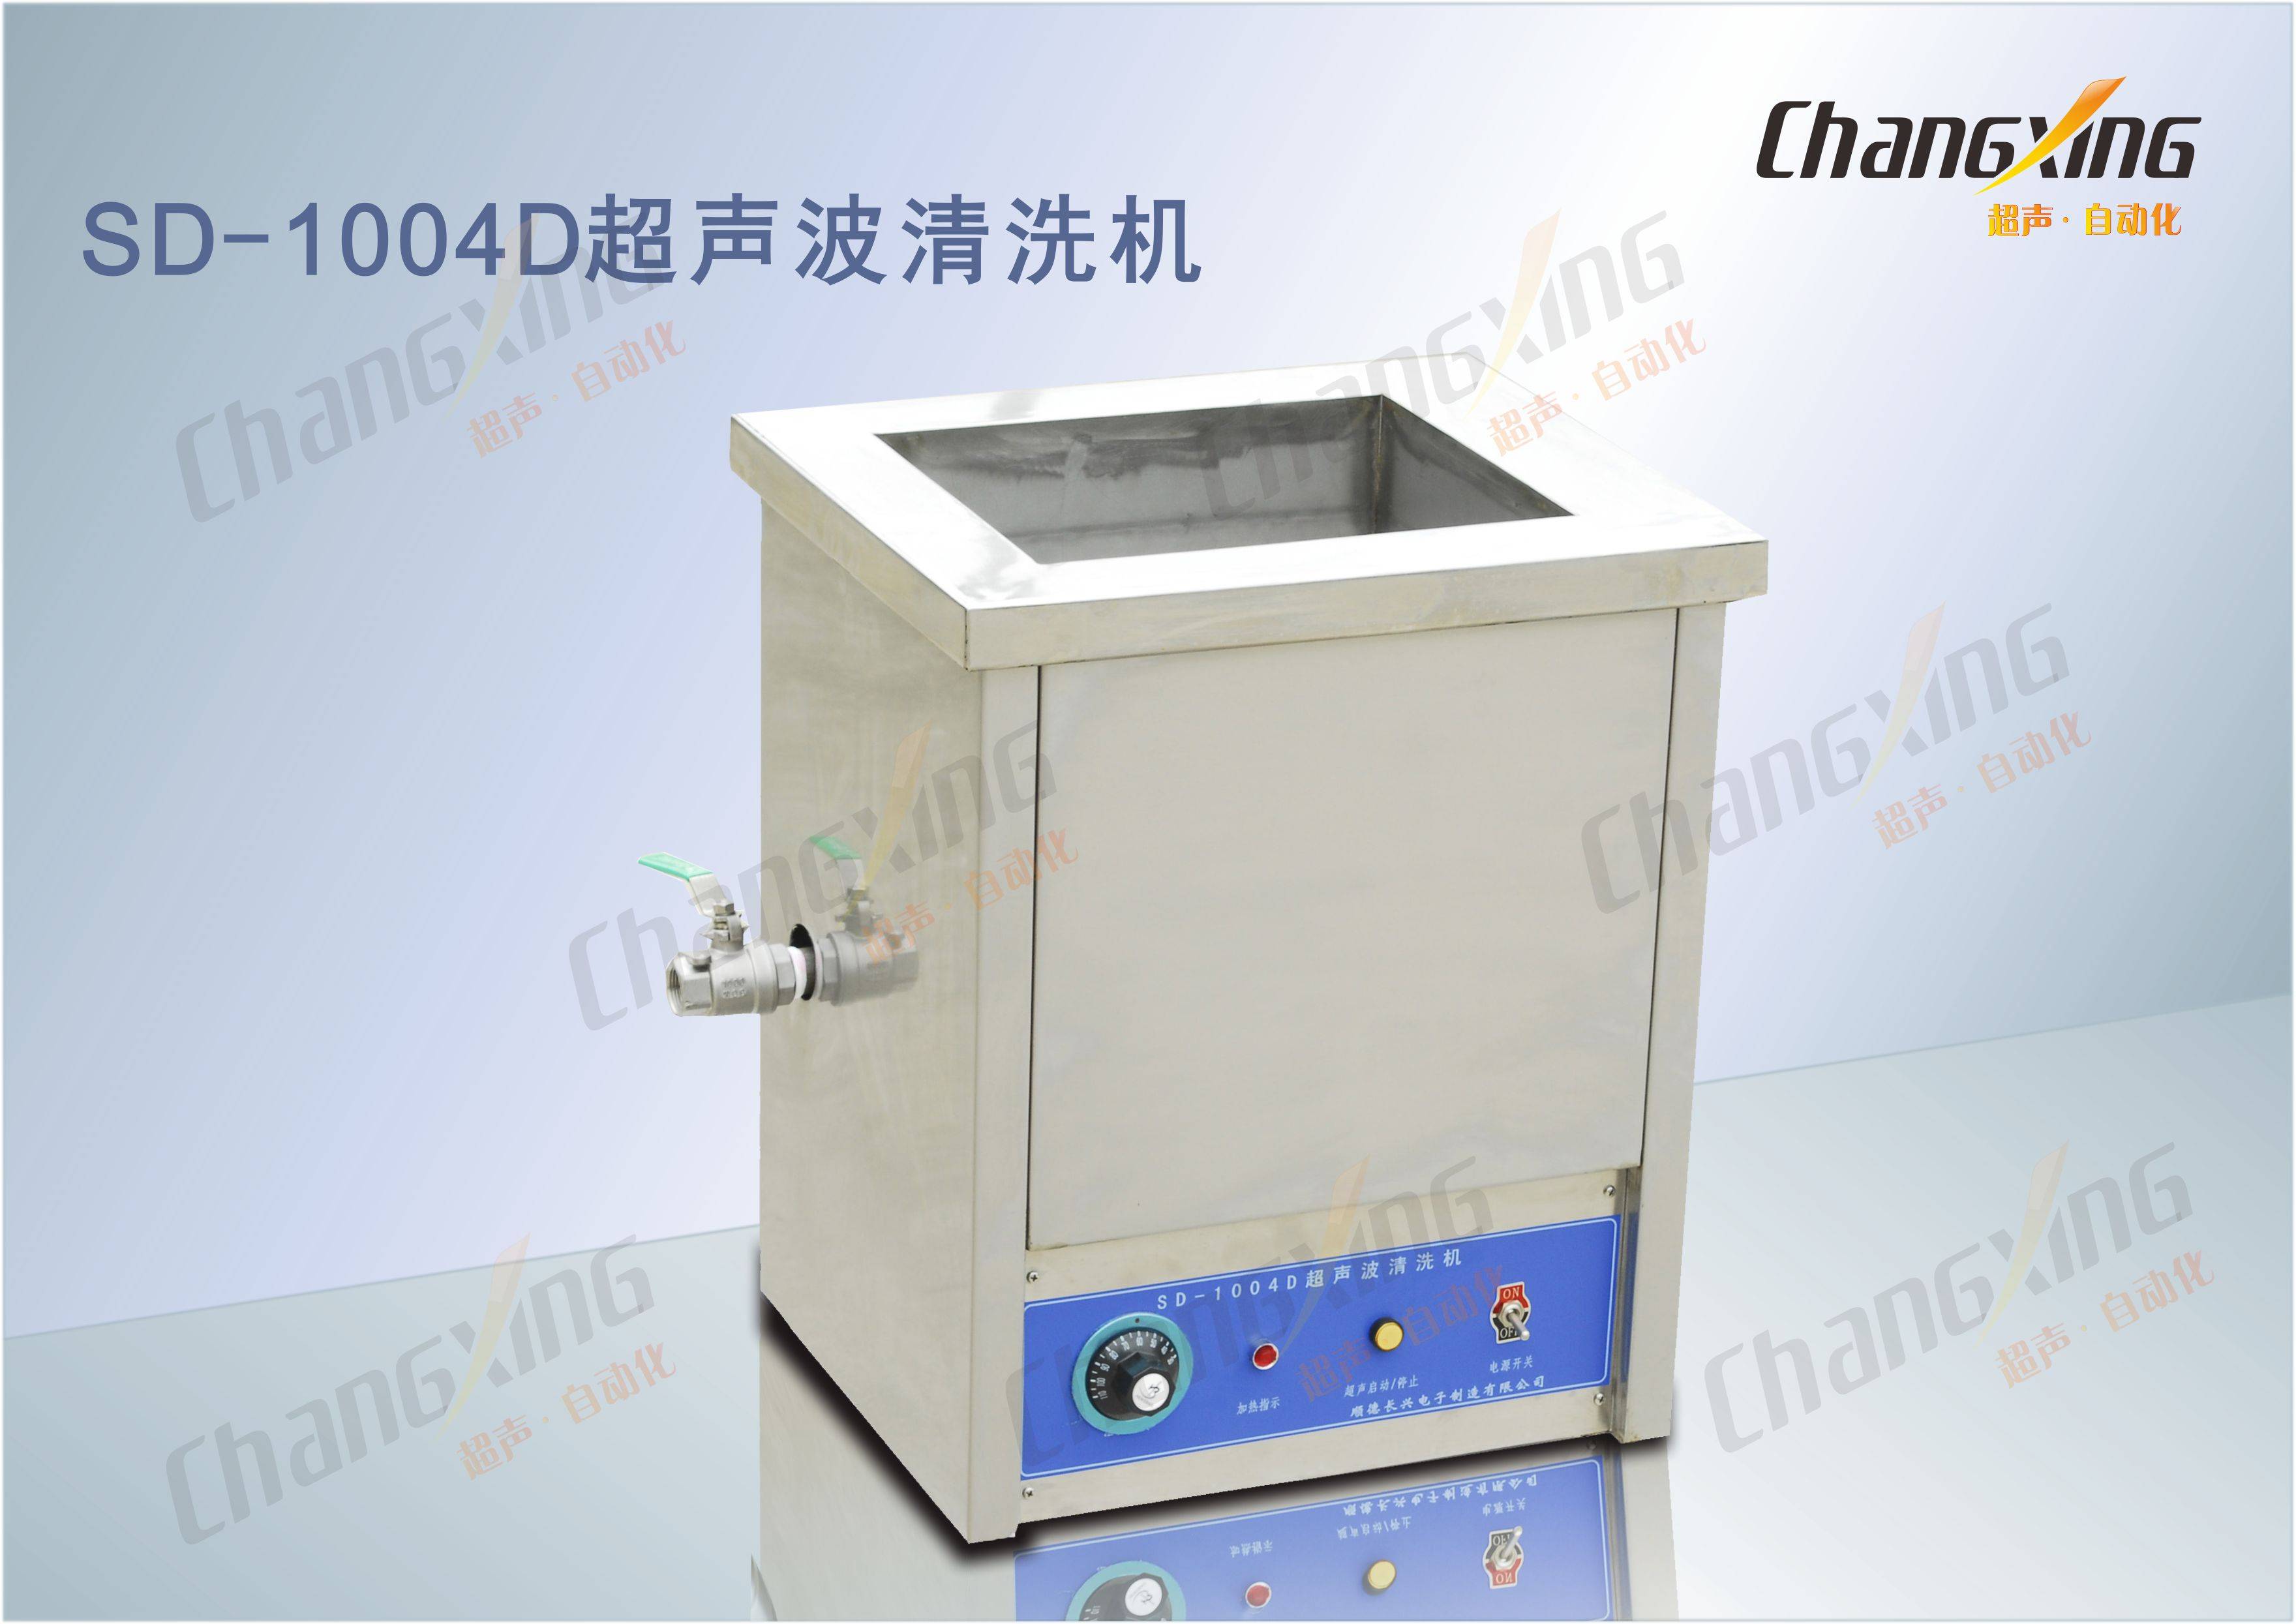 SD-1004D超声波清洗机(1)